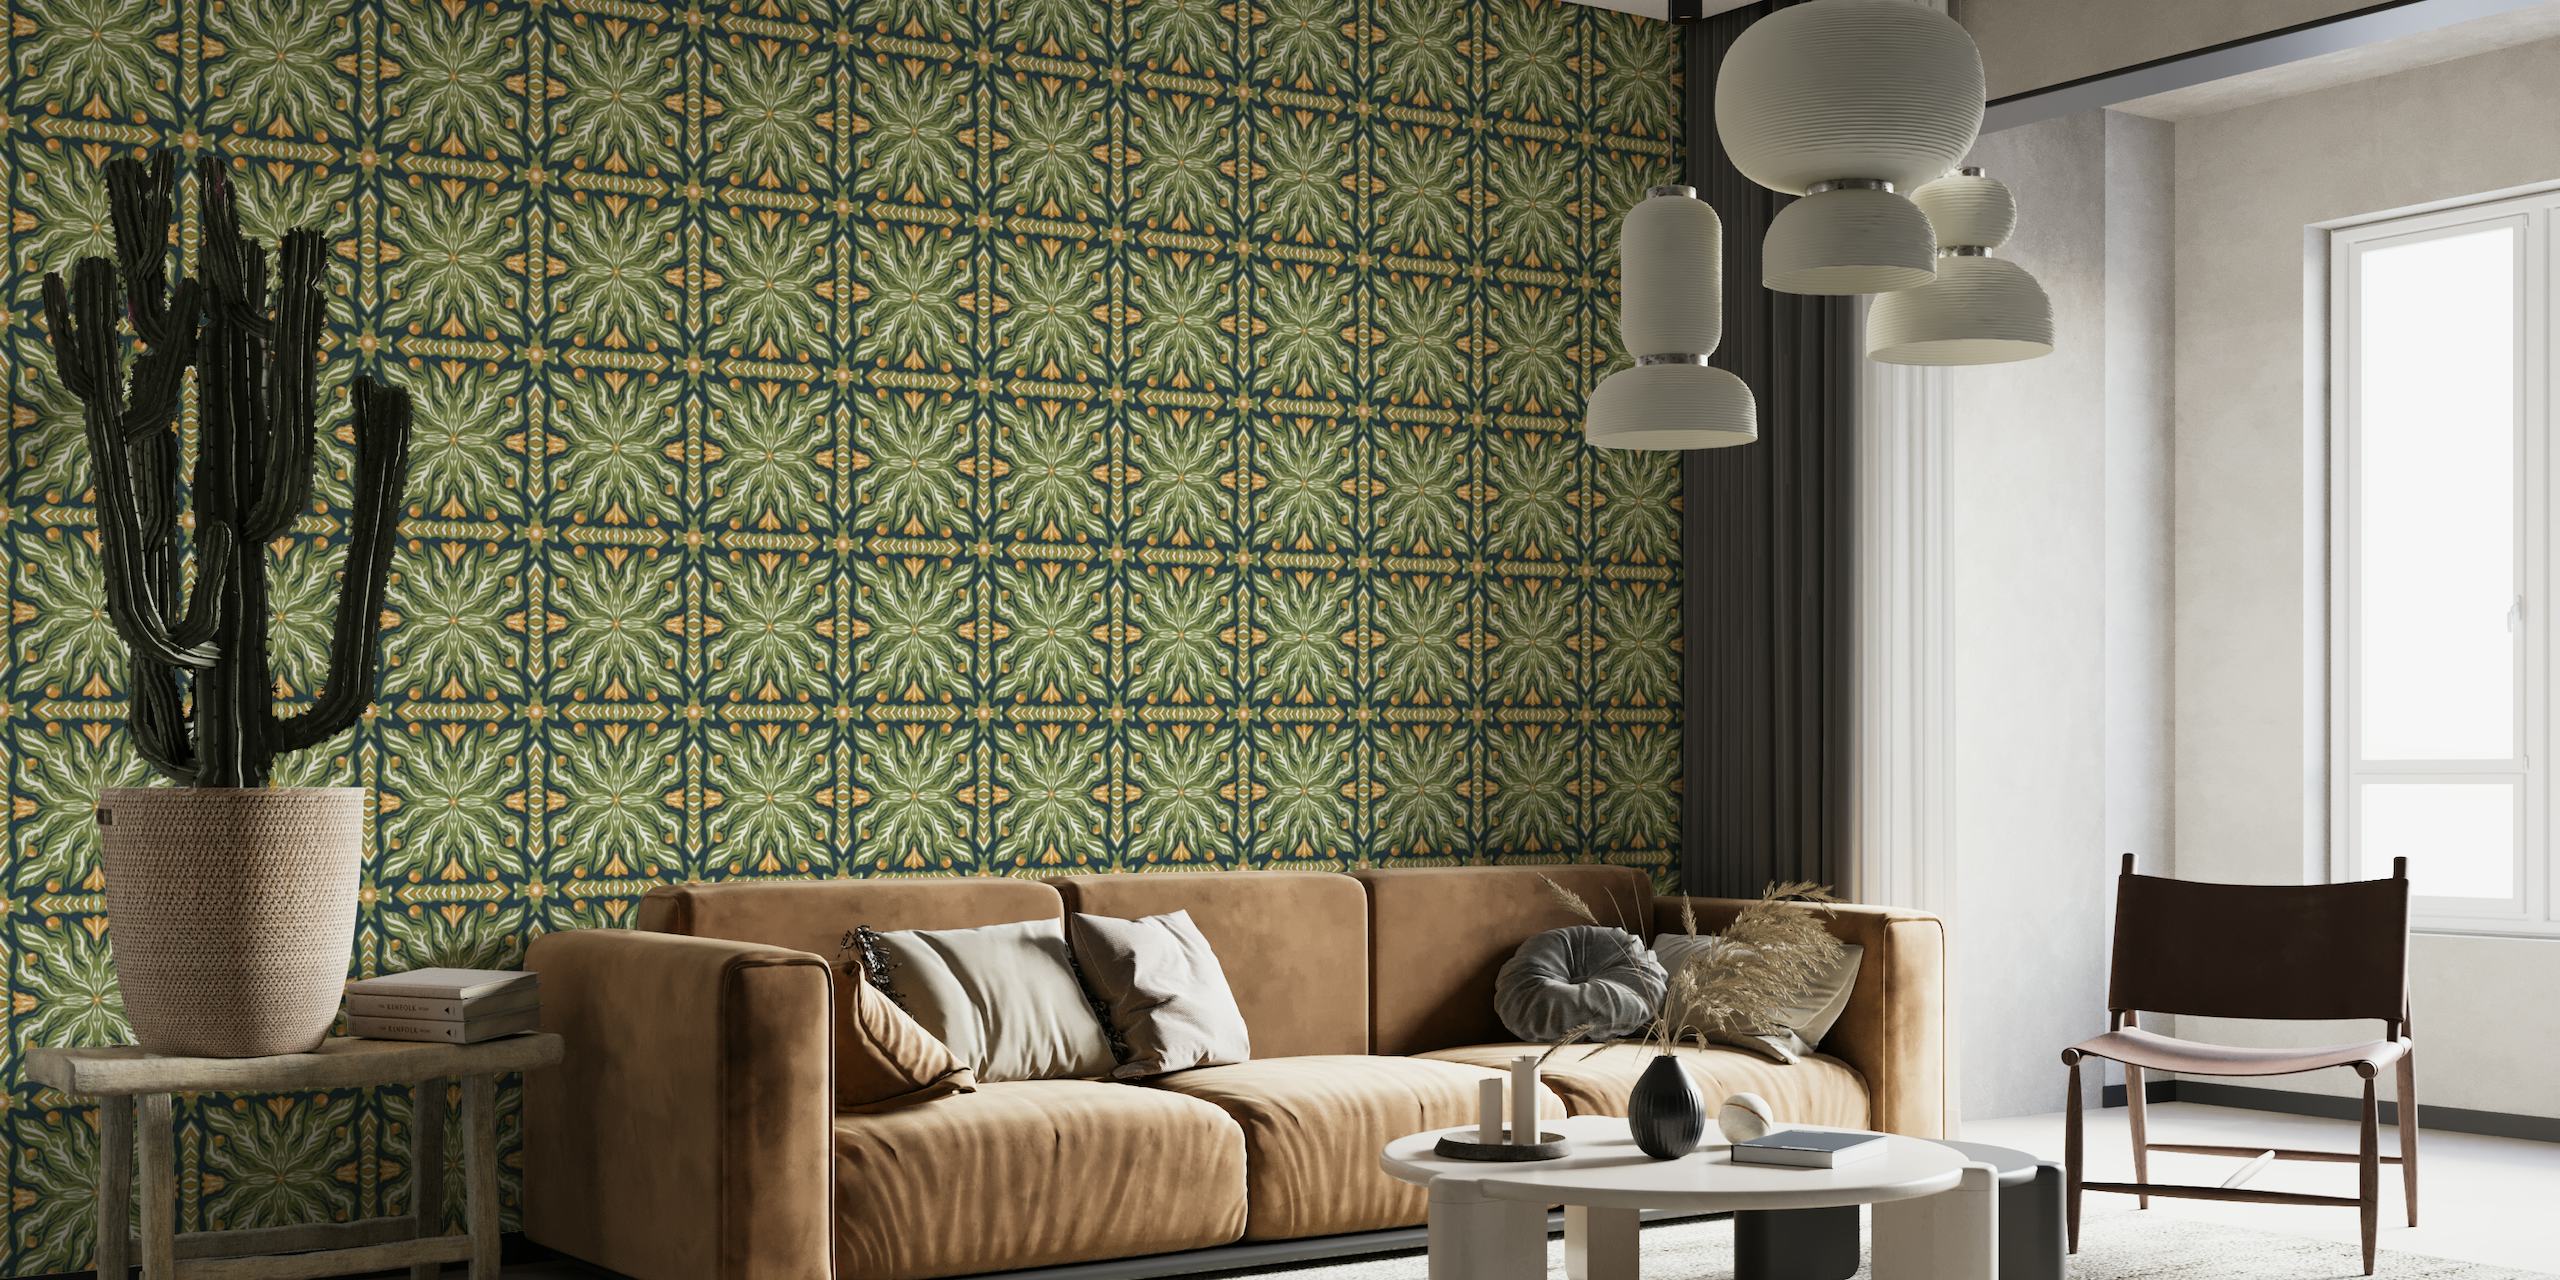 Grønt symmetrisk havemønster vægmaleri med indviklede naturinspirerede designs og guldaccenter.